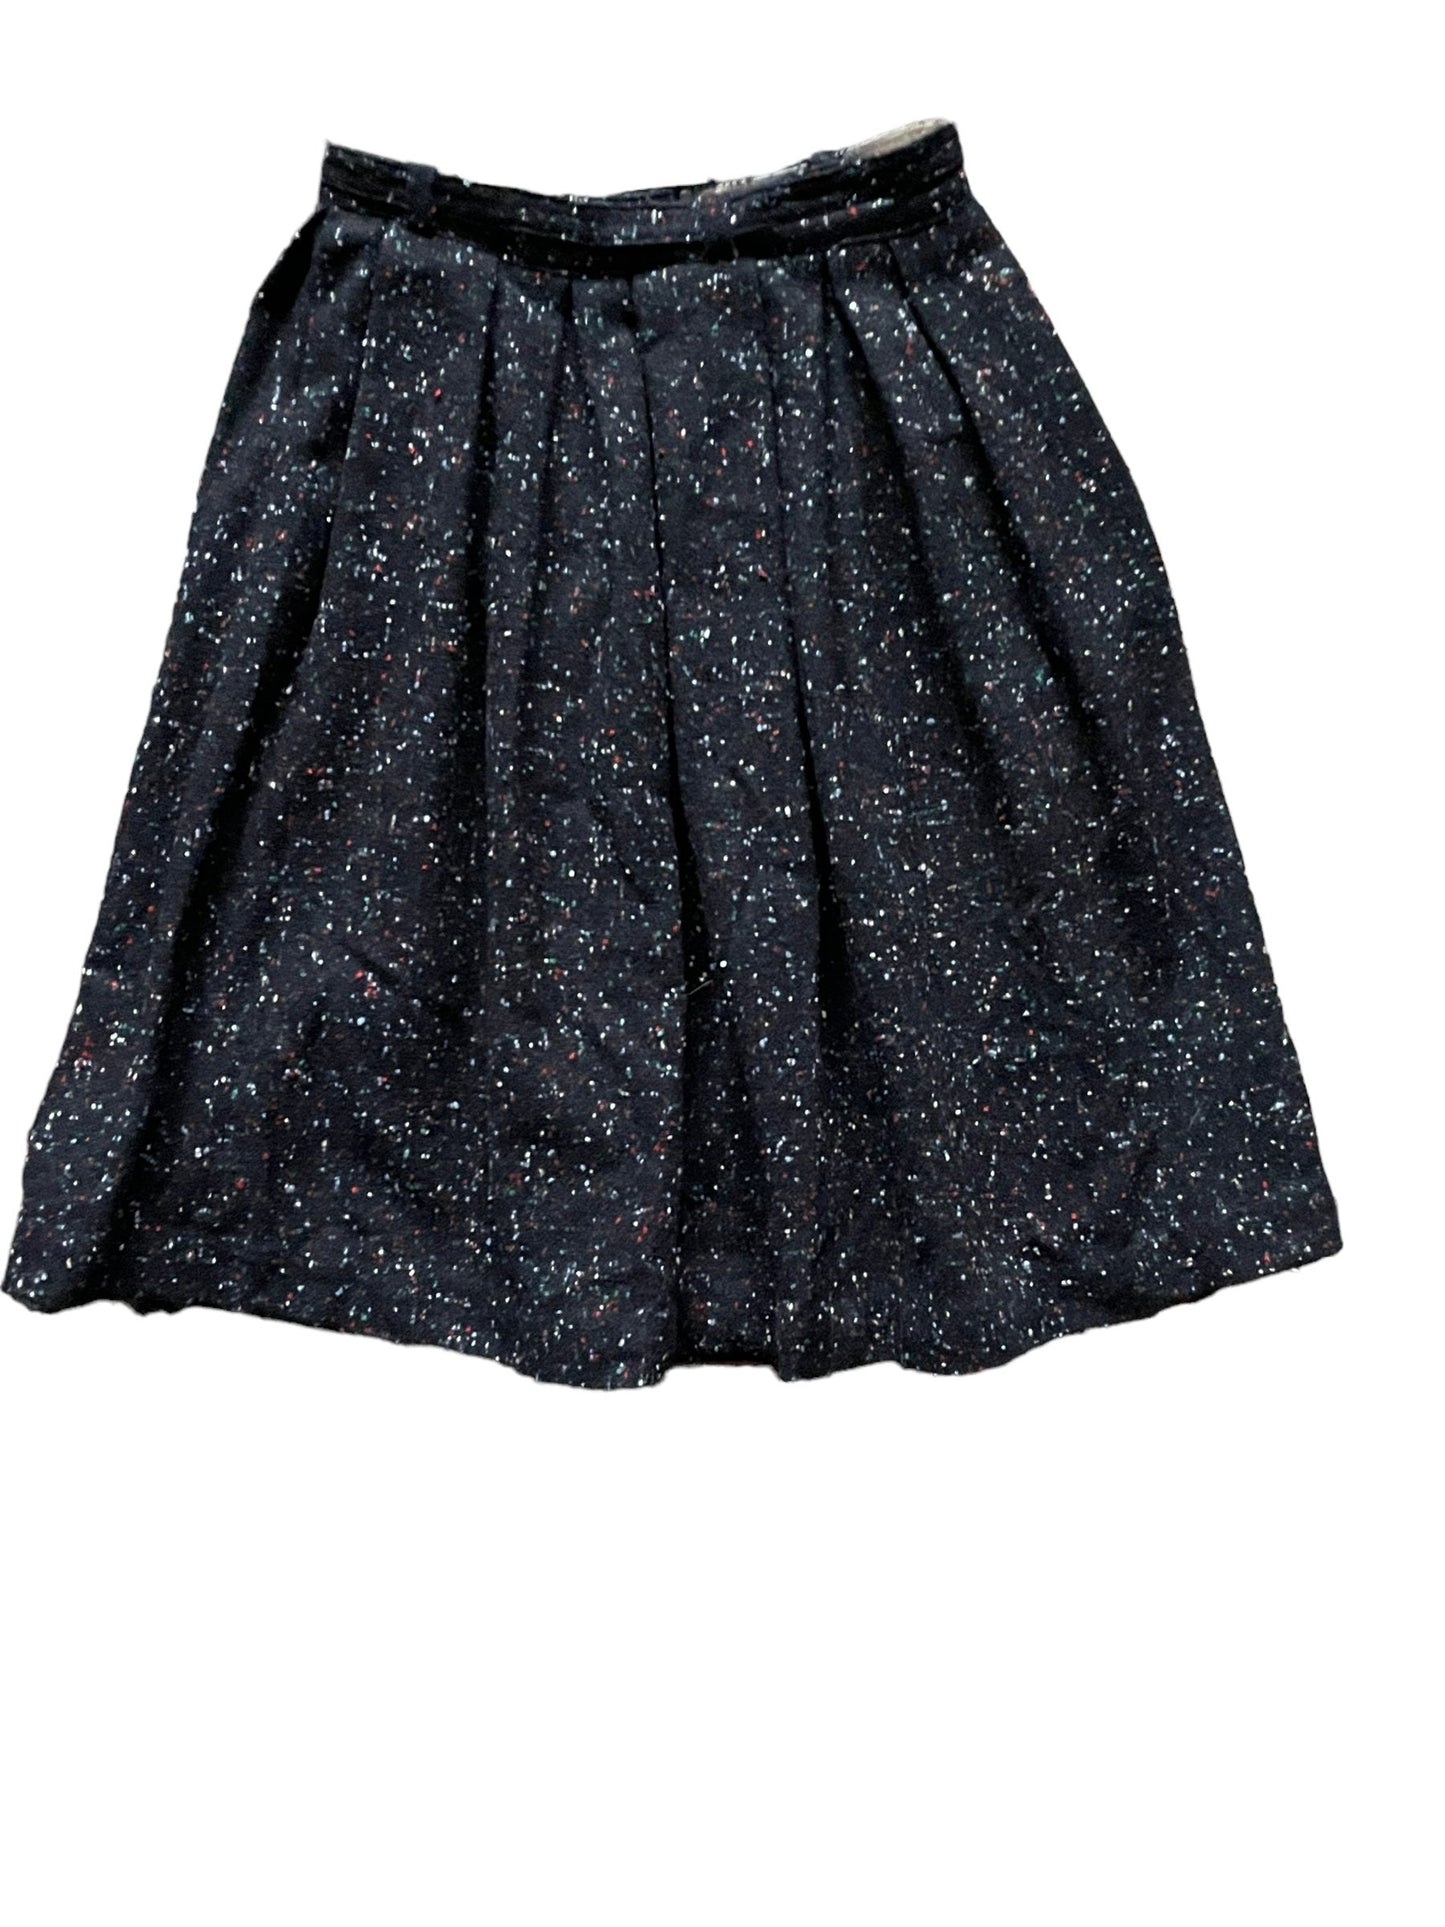 Full back view of Vintage 1950s Black Wool Flecked Skirt SZ S | Barn Owl Seattle | Ladies True Vintage Skirts